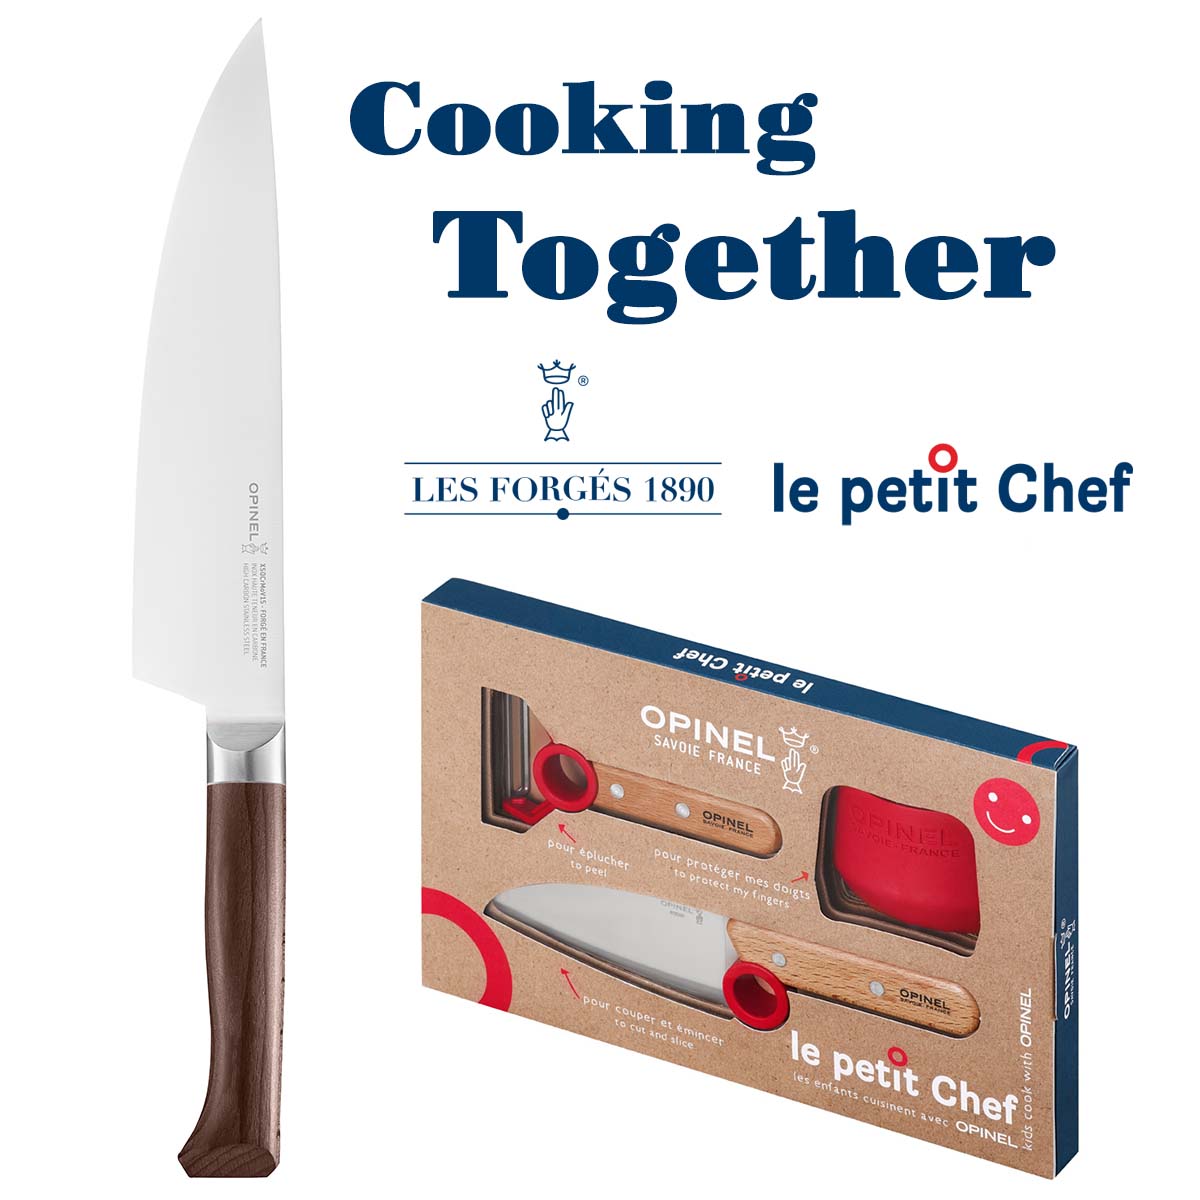 Cooking together : Le Petit Chef 3pcs set x Les Forgés Chef Knife